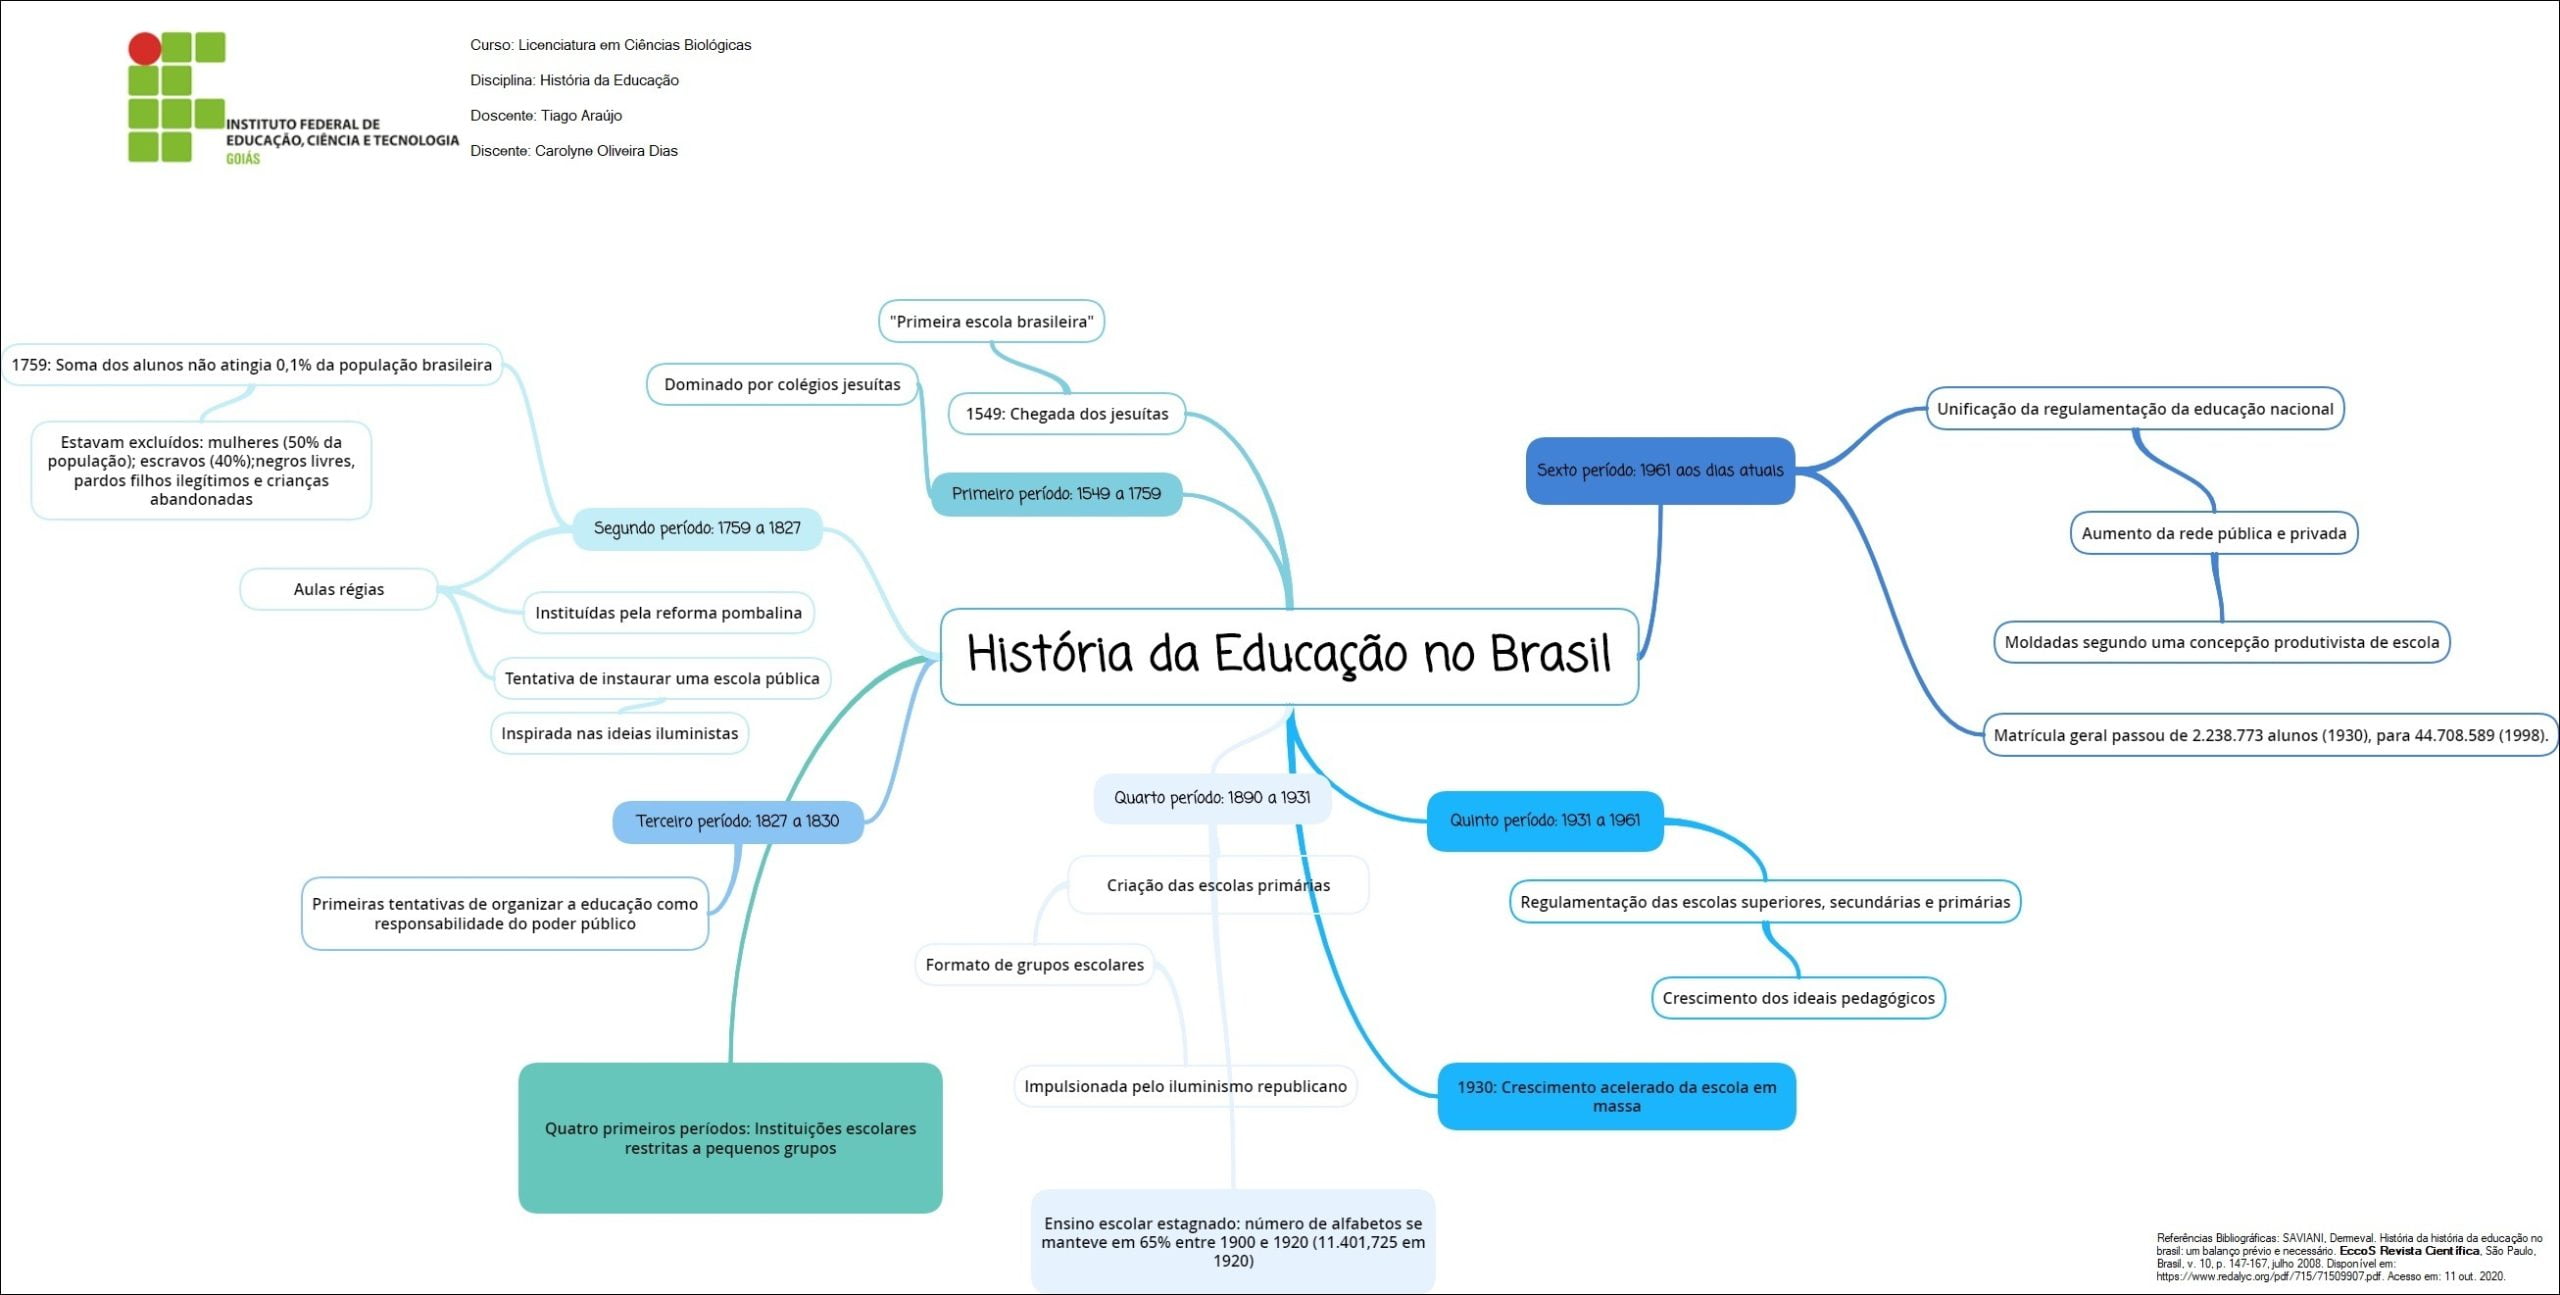 Mapa mental com História da Educação no Brasil no centro, ramificando-se para Curso Licenciatura em Ciências Biológicas e Disciplina História da Educação